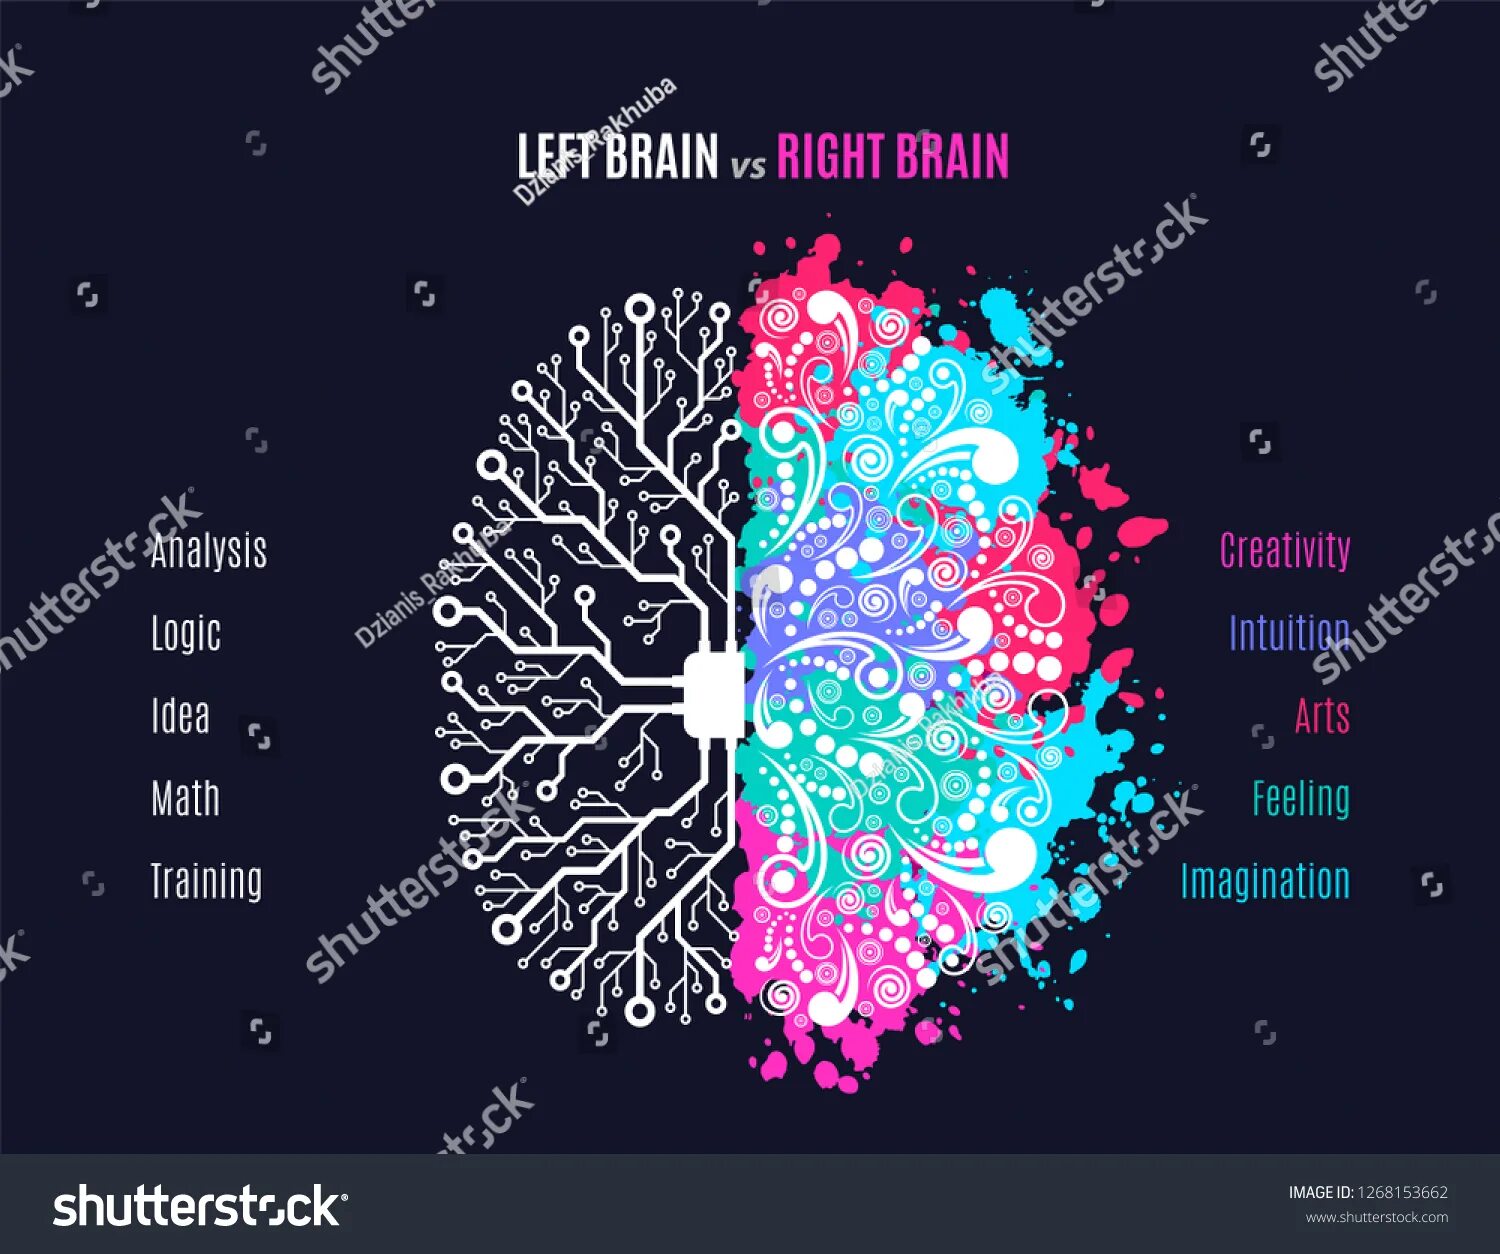 Brain vs brain. Left Brain vs right Brain. Brain left and right Hemisphere. Left Brain versus right Brain. Left and right Brain idea.